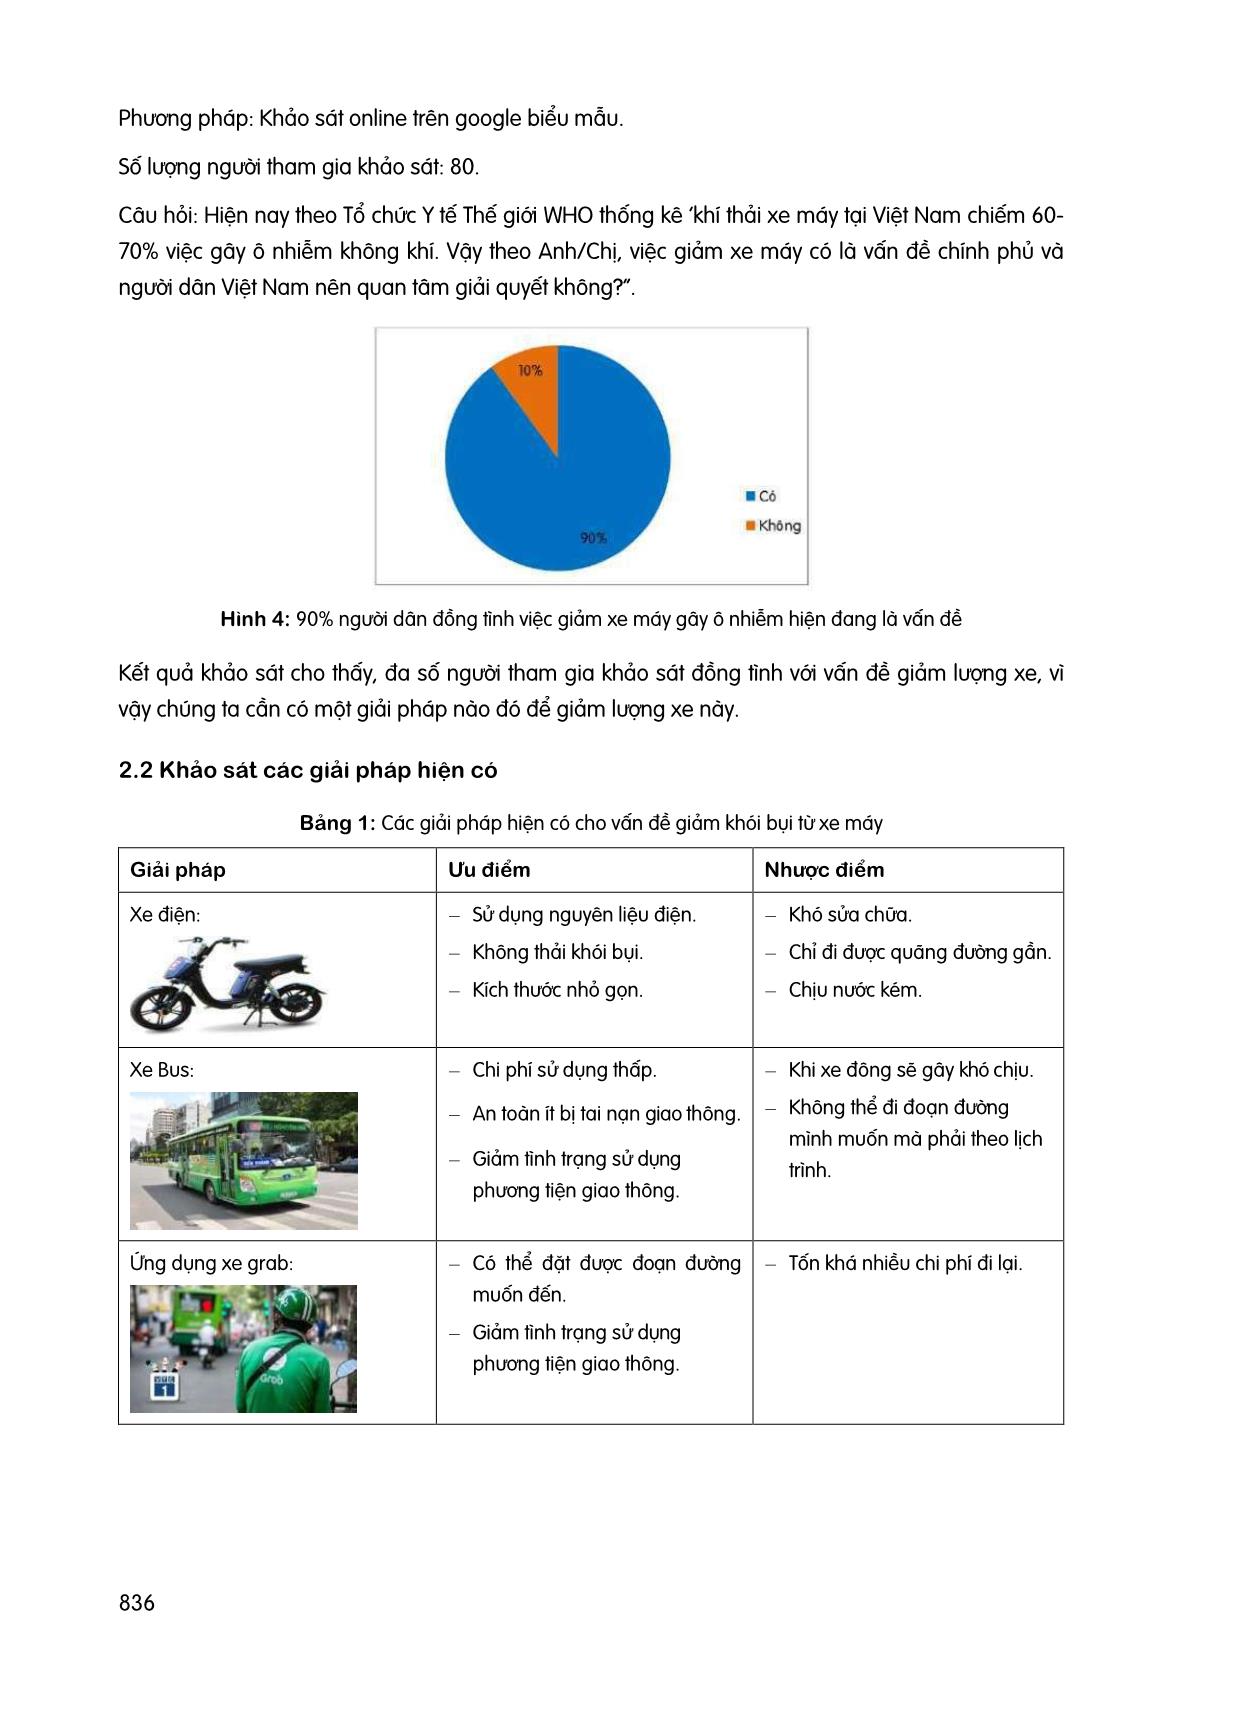 Ứng dụng “Hutech go - Đưa nhau đến trường”, giải pháp giảm số lượng xe máy của sinh viên lưu thông, giúp bảo vệ môi trường trang 3